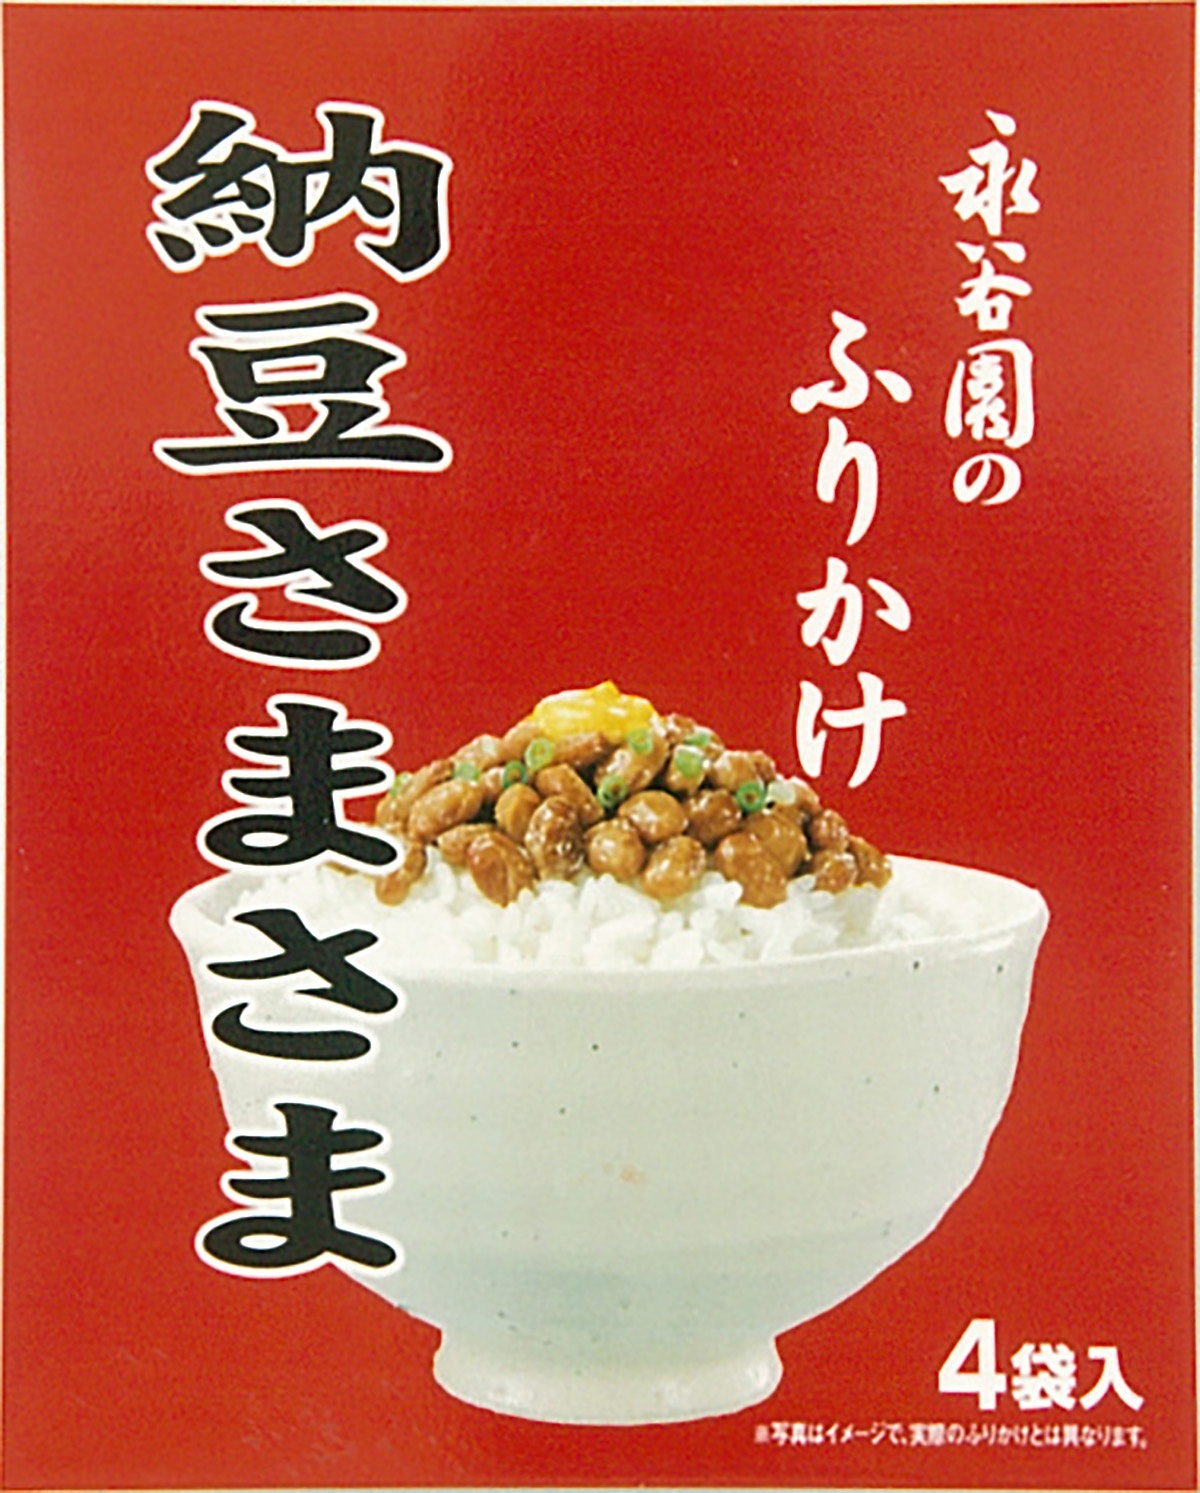 1998年に木内さんが開発に携わった「ふりかけ 納豆さまさま」(終売商品)